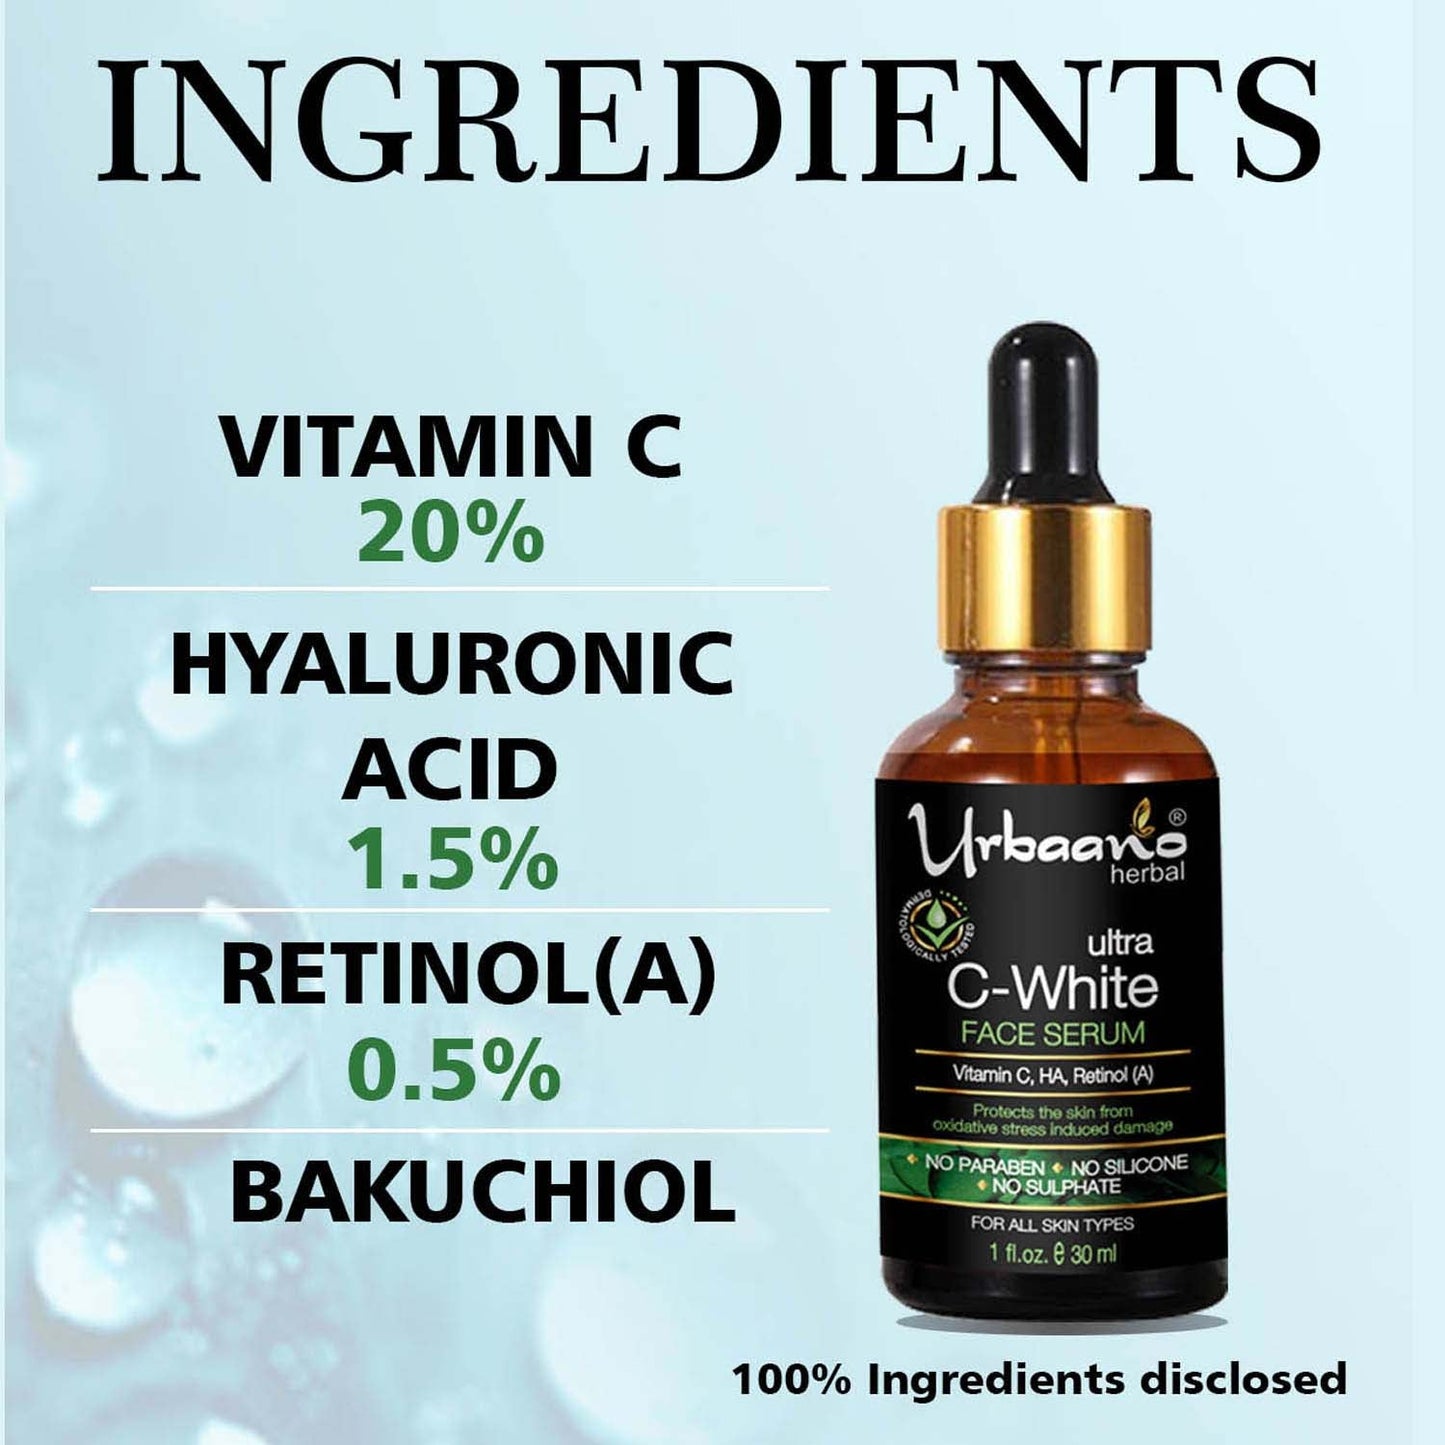 urbaano herbal vitamn c  parlour glow vitamin c face serum with hyaluronic acid, retinol for bright illuminating skin